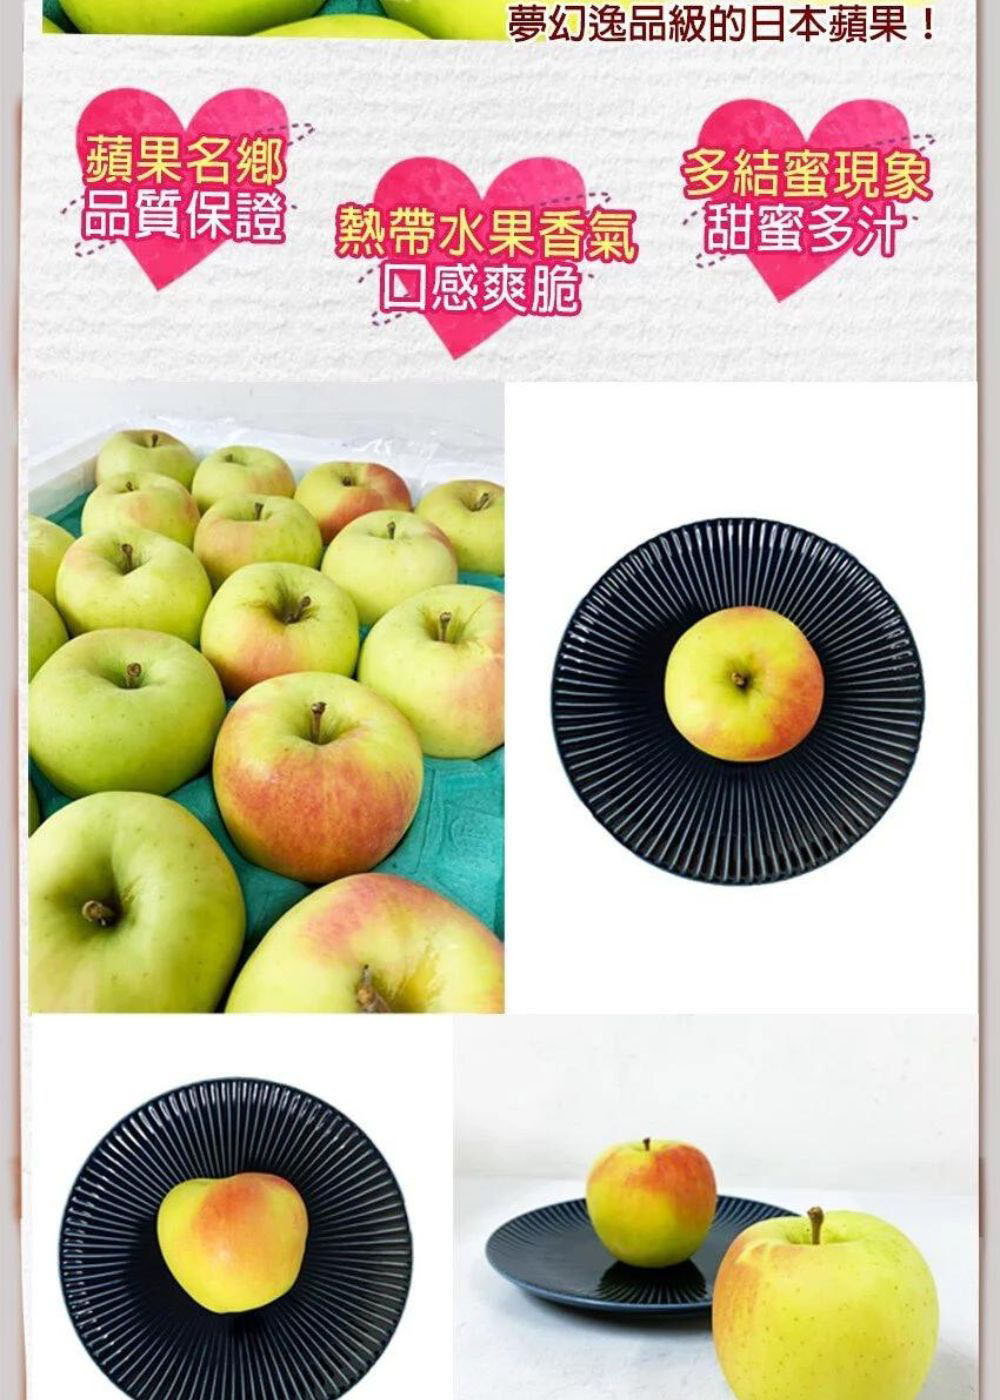 RealShop 真食材本舖 青森名月蘋果8顆＋日本蜜富士8